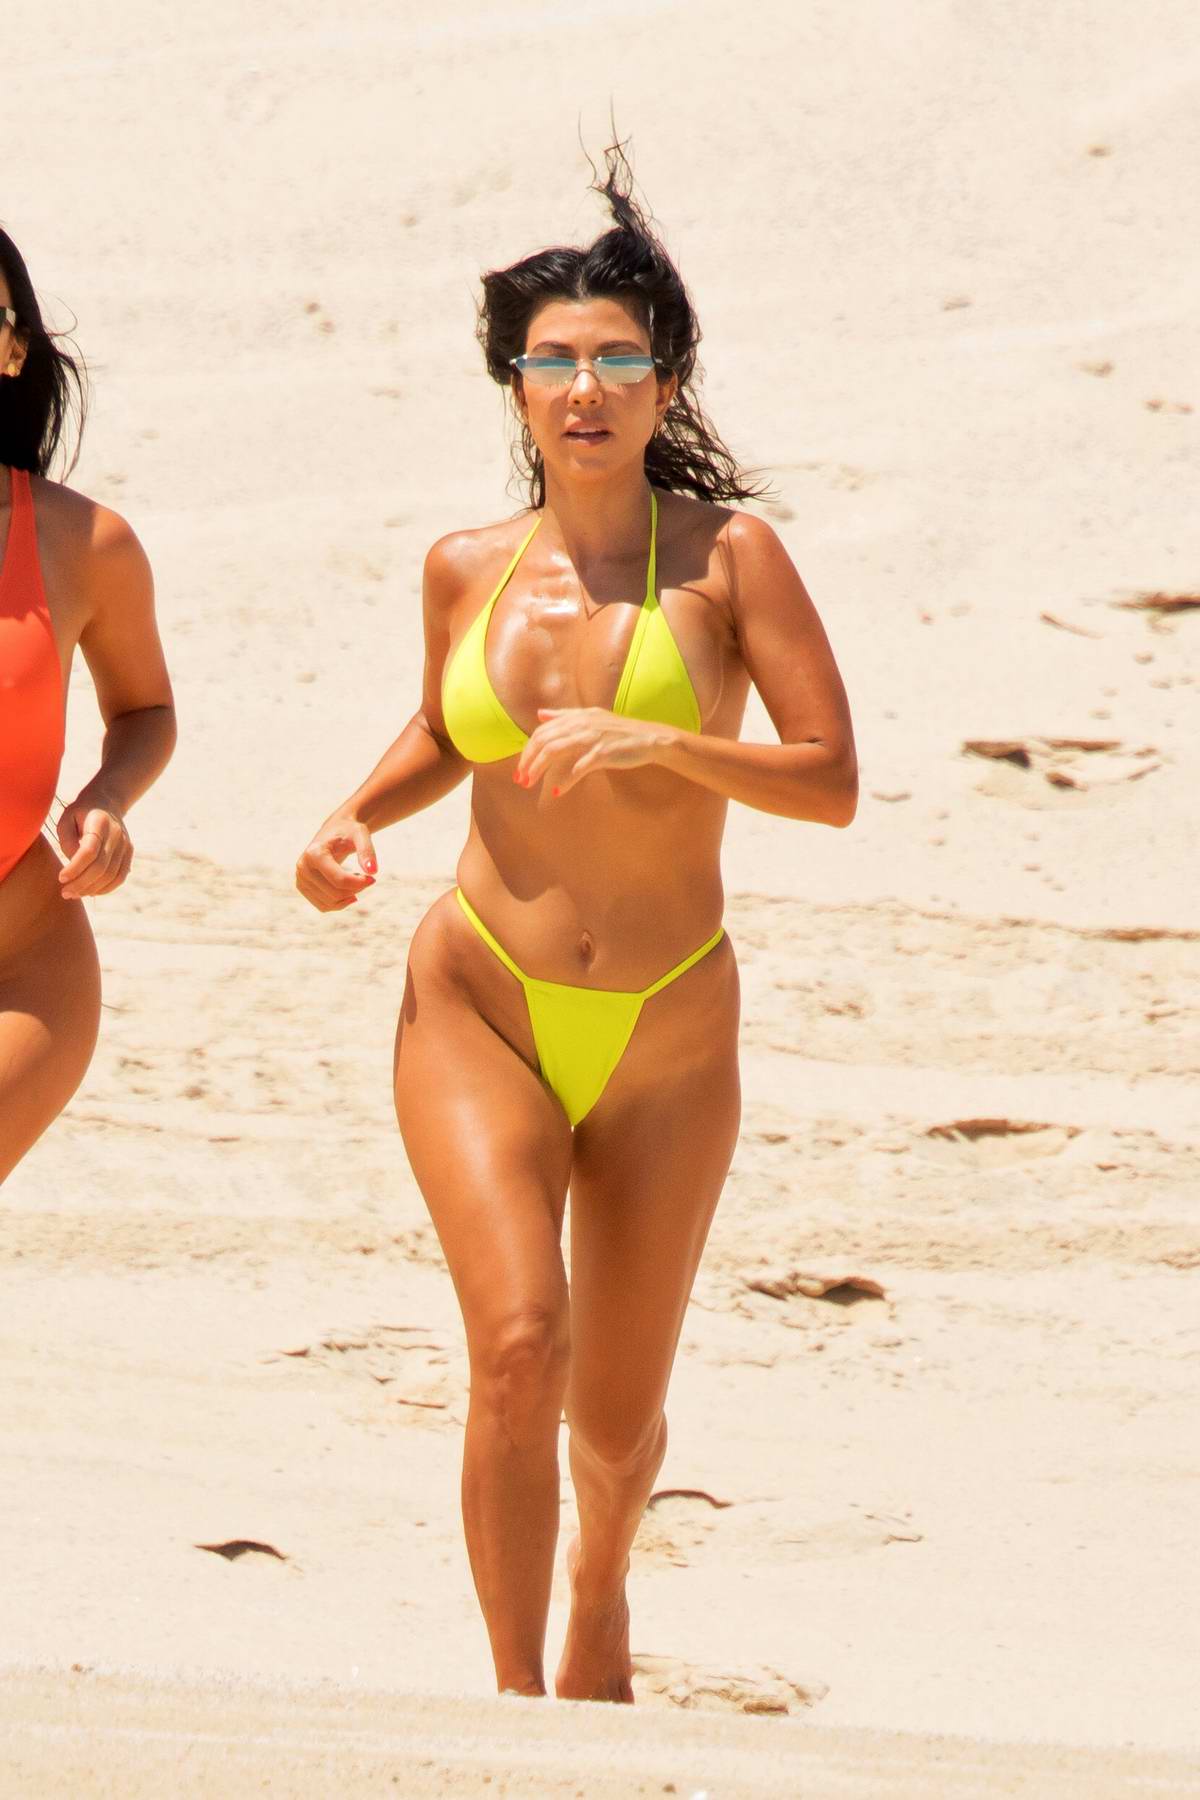 Kourtney Kardashian Wears A Yellow Bikini As She Hits The Beach With